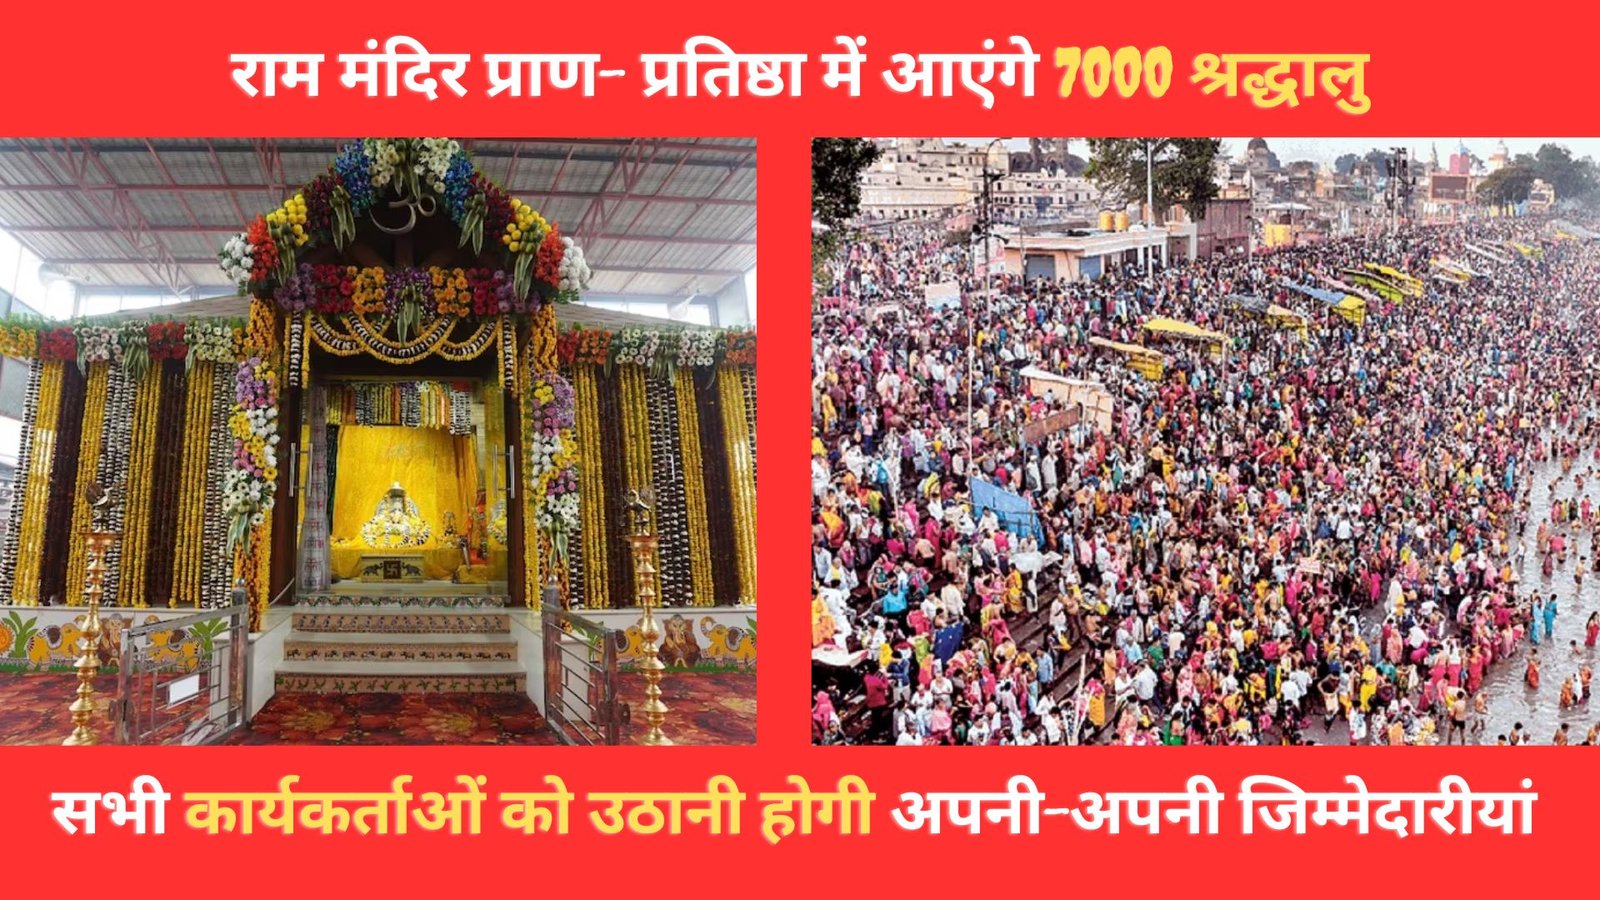 राम मंदिर प्राण- प्रतिष्ठा में आएंगे 7000 श्रद्धालु, सभी कार्यकर्ताओं को उठानी होगी अपनी-अपनी जिम्मेदारीयां